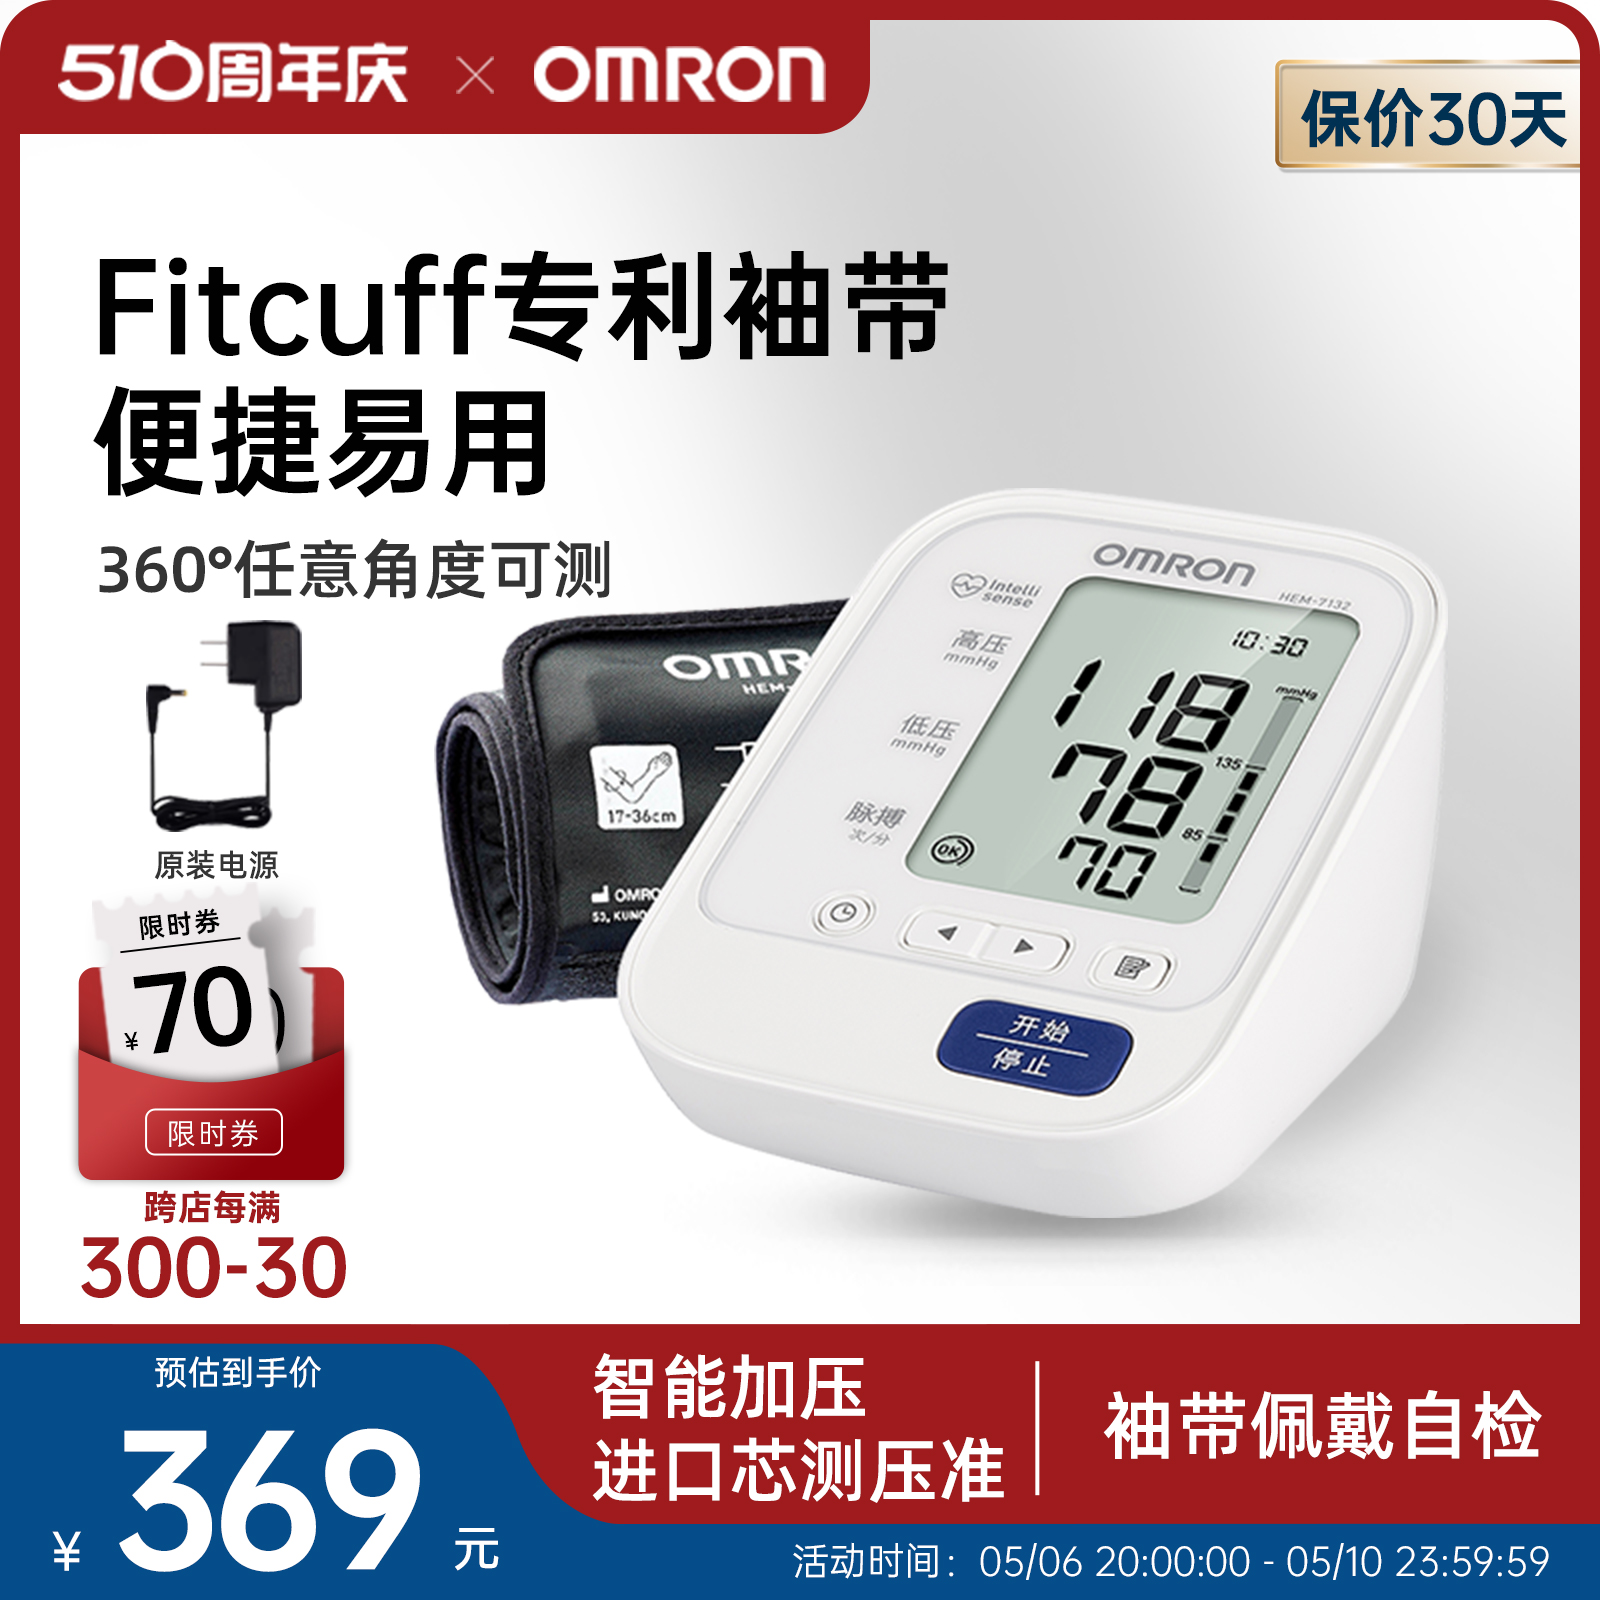 欧姆龙电子血压计臂式血压测量仪高精准家用正品测压仪7136升级款